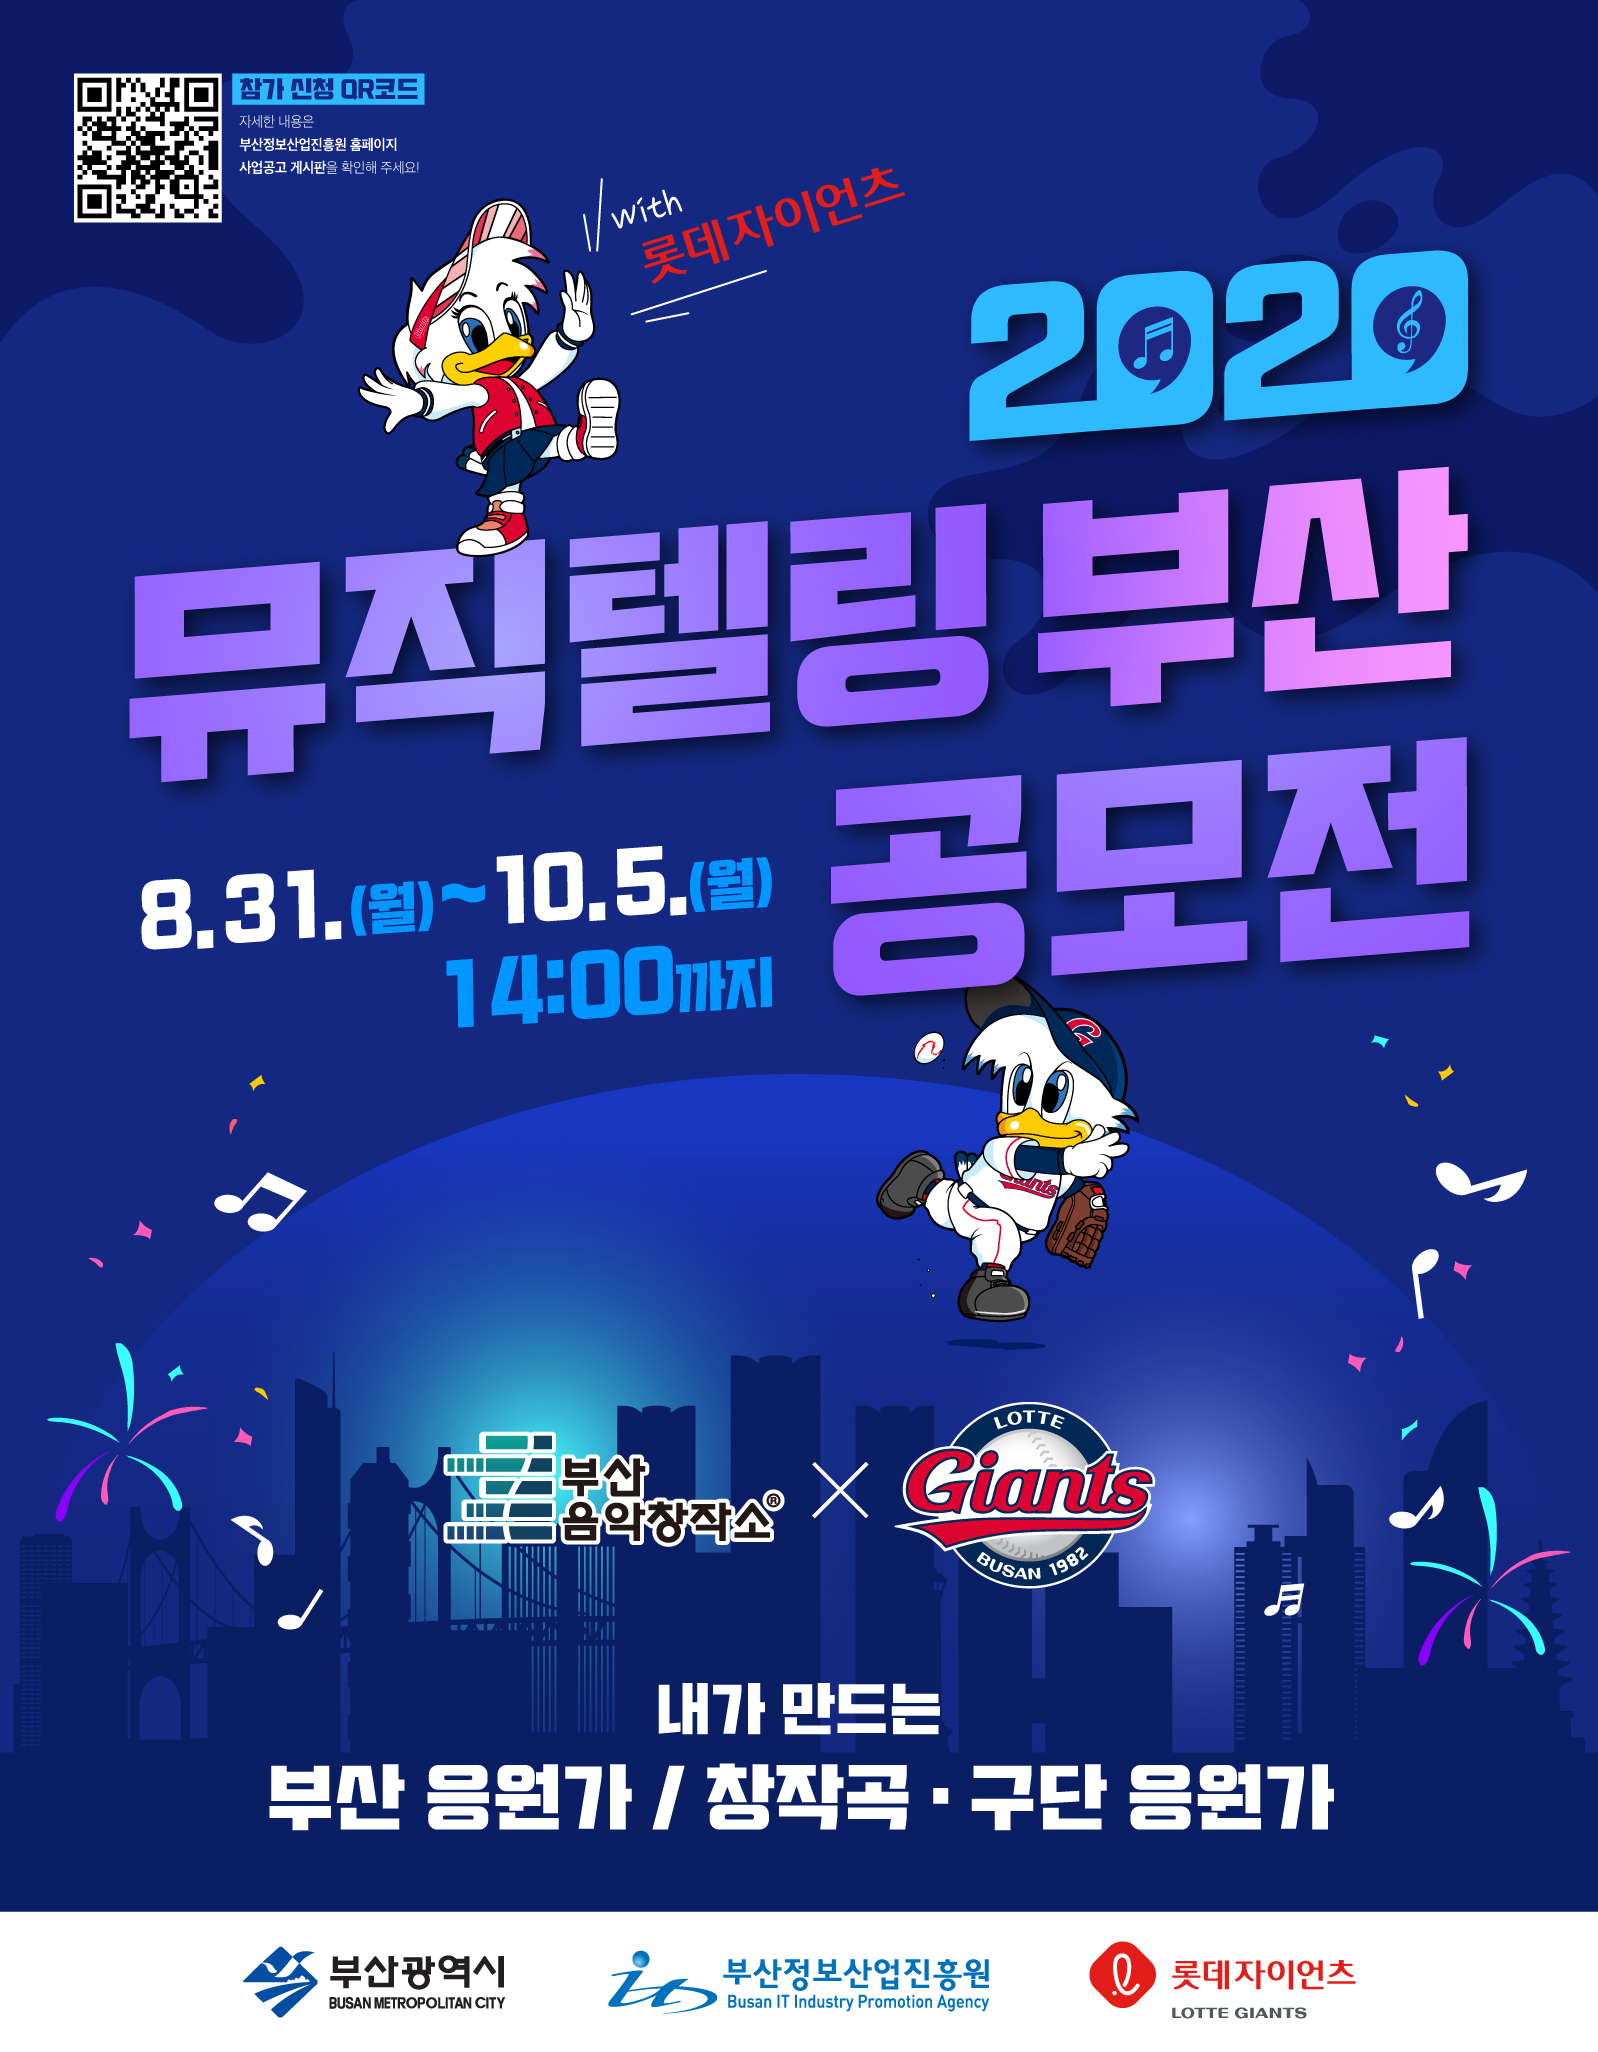 부산음악창작소 x 롯데자이언츠 2020 뮤직텔링 부산